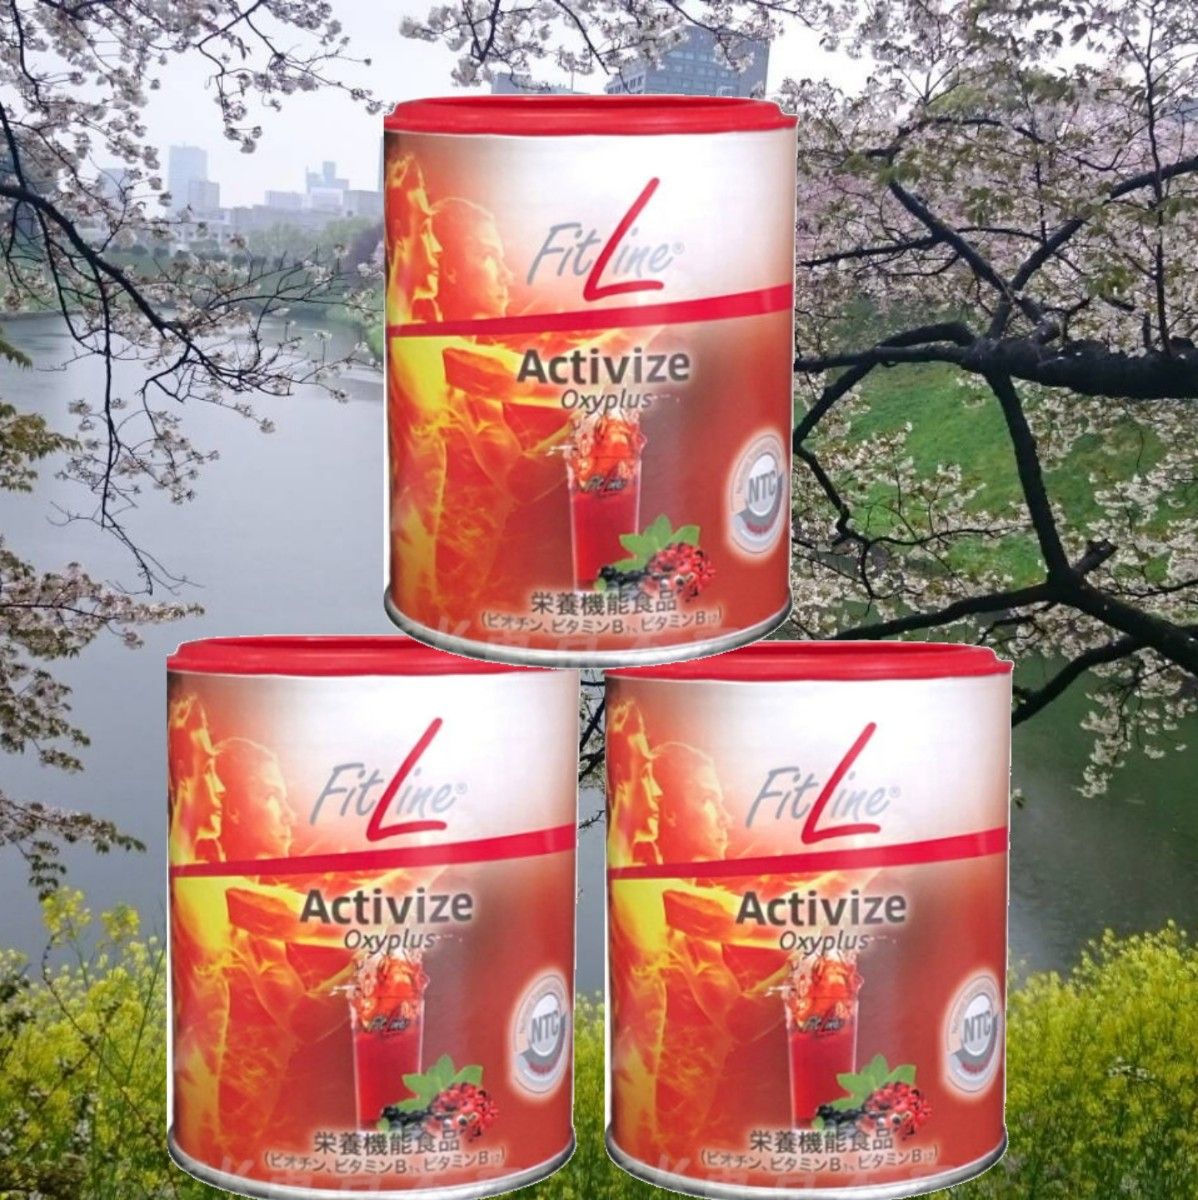 ドイツPM アクティヴァイズ5缶セット　25%増量 FITLINEアクティヴァイズ3缶セット Fitline